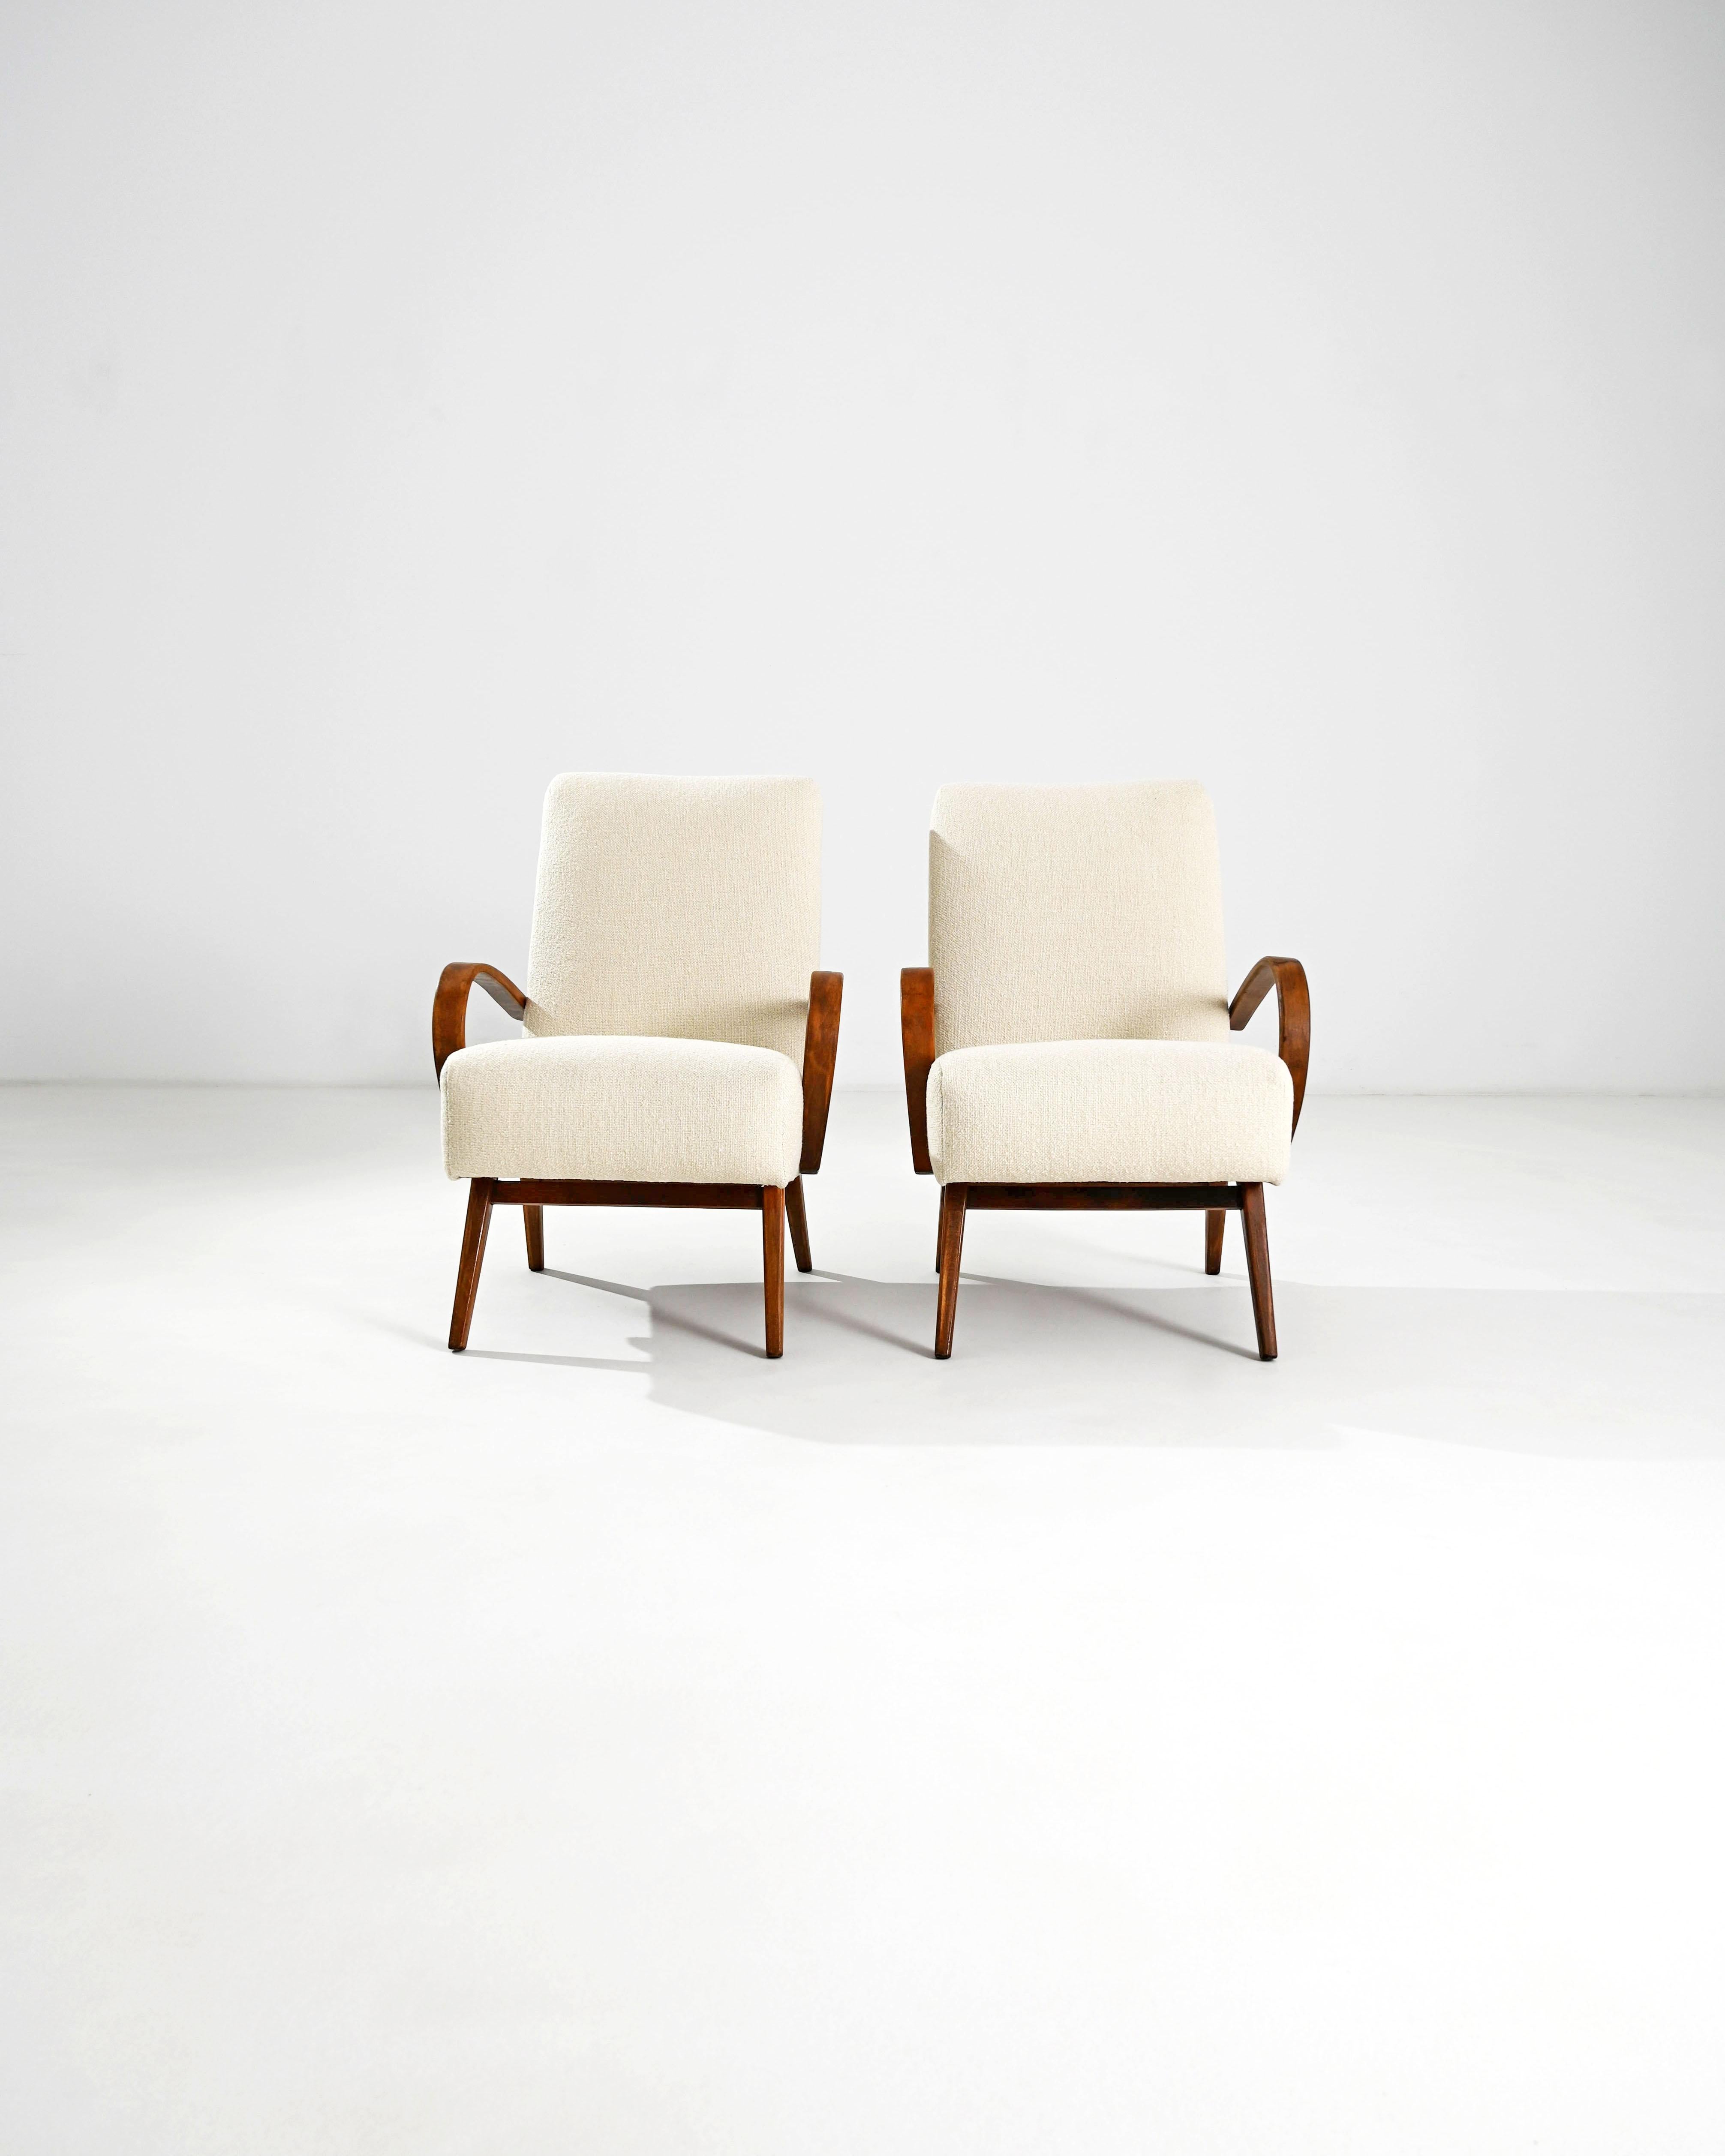 Produites dans l'ancienne Tchécoslovaquie, ces deux paires de fauteuils en bois courbé datant d'environ 1950 ont été retapissées avec un tissu bouclé crème. Le mélange coton-lin a été choisi pour mettre en valeur l'élégance vintage du cadre en bois